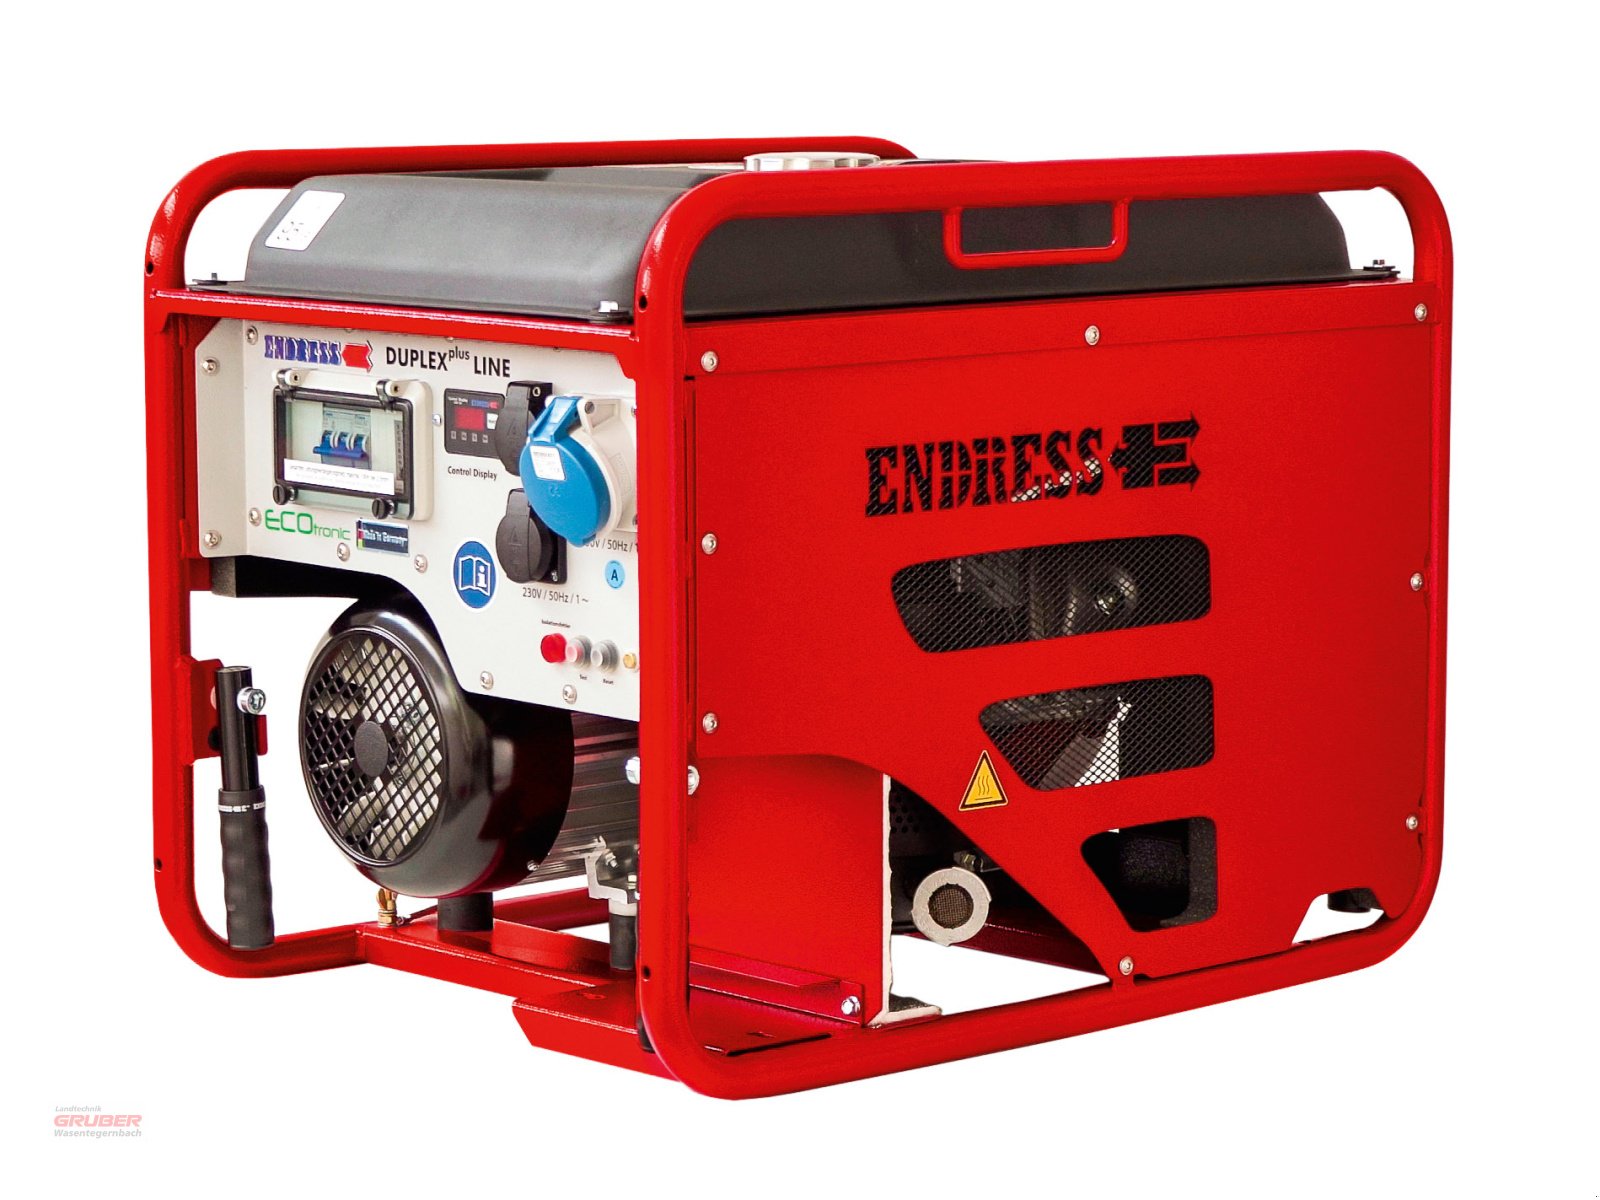 Stromerzeuger des Typs Endress ESE 406 HG-GT Duplex + ISO-Duplex-Line - Sofort verfügbar!, Neumaschine in Dorfen (Bild 1)